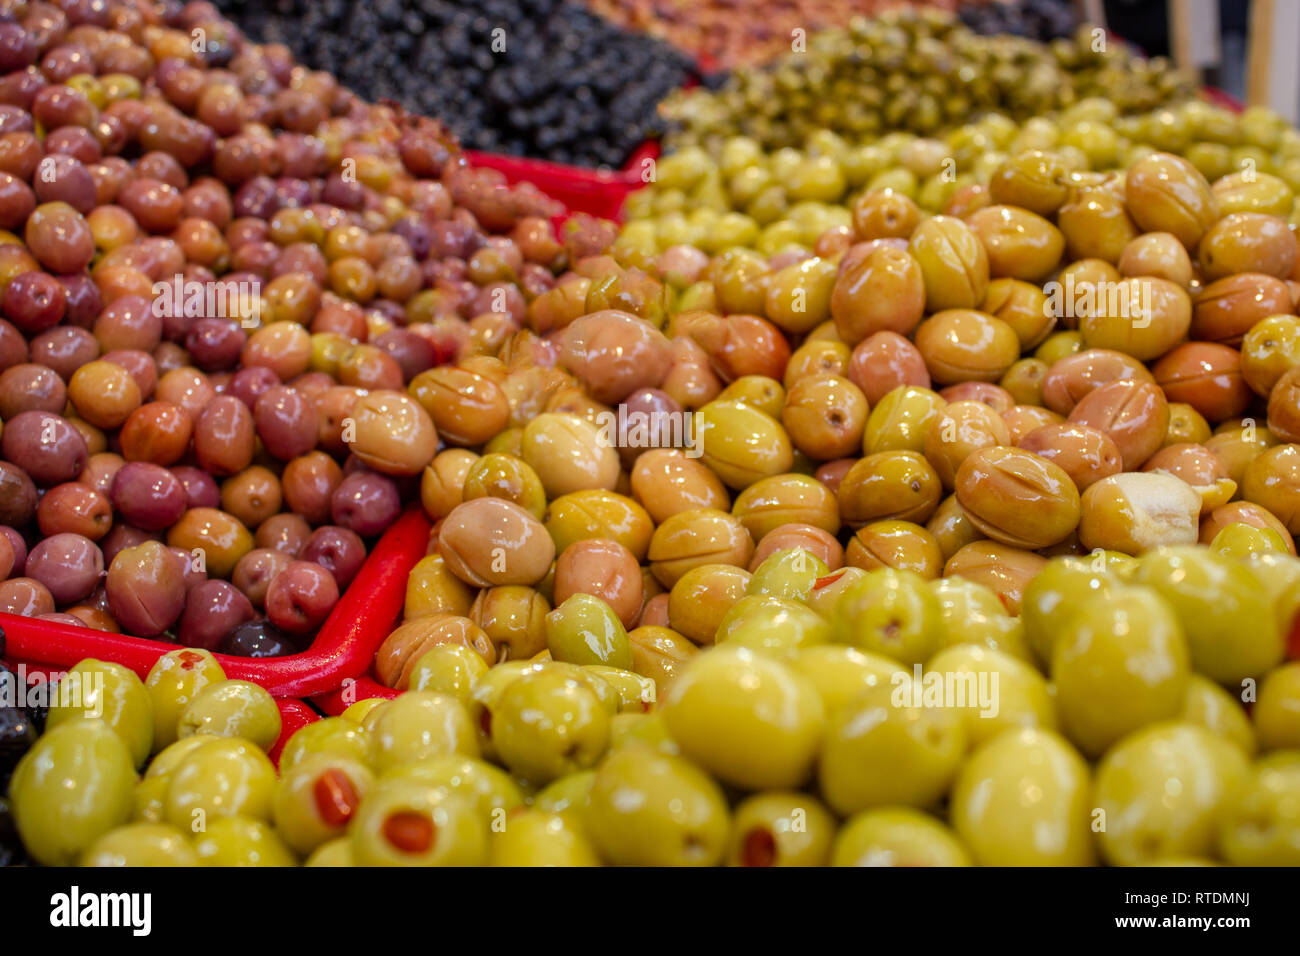 Verde e olive nere sul mercato Foto Stock